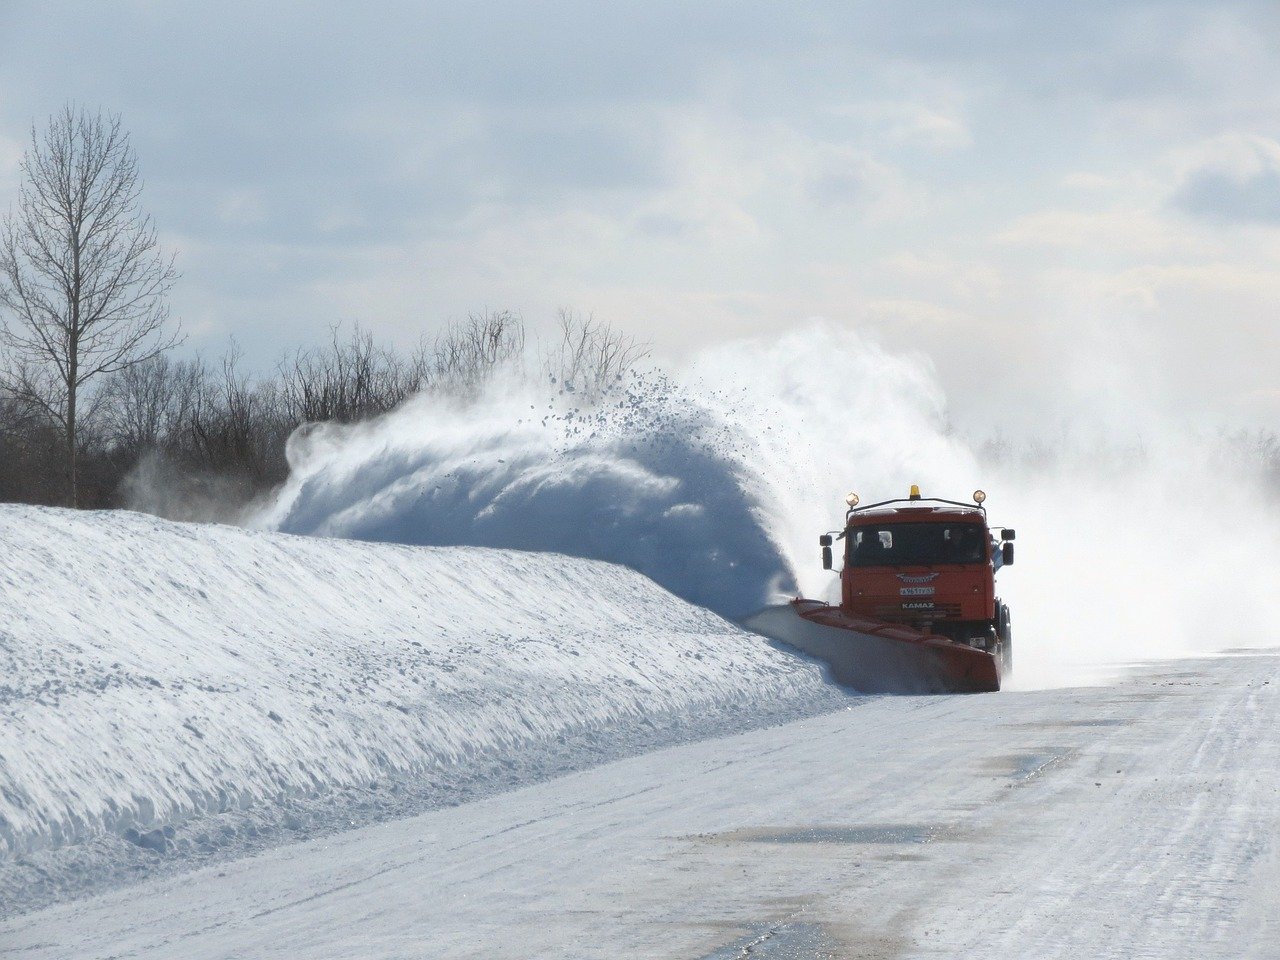 Drumuri închise circulației, în județul Vrancea, din cauza zăpezii și viscolului